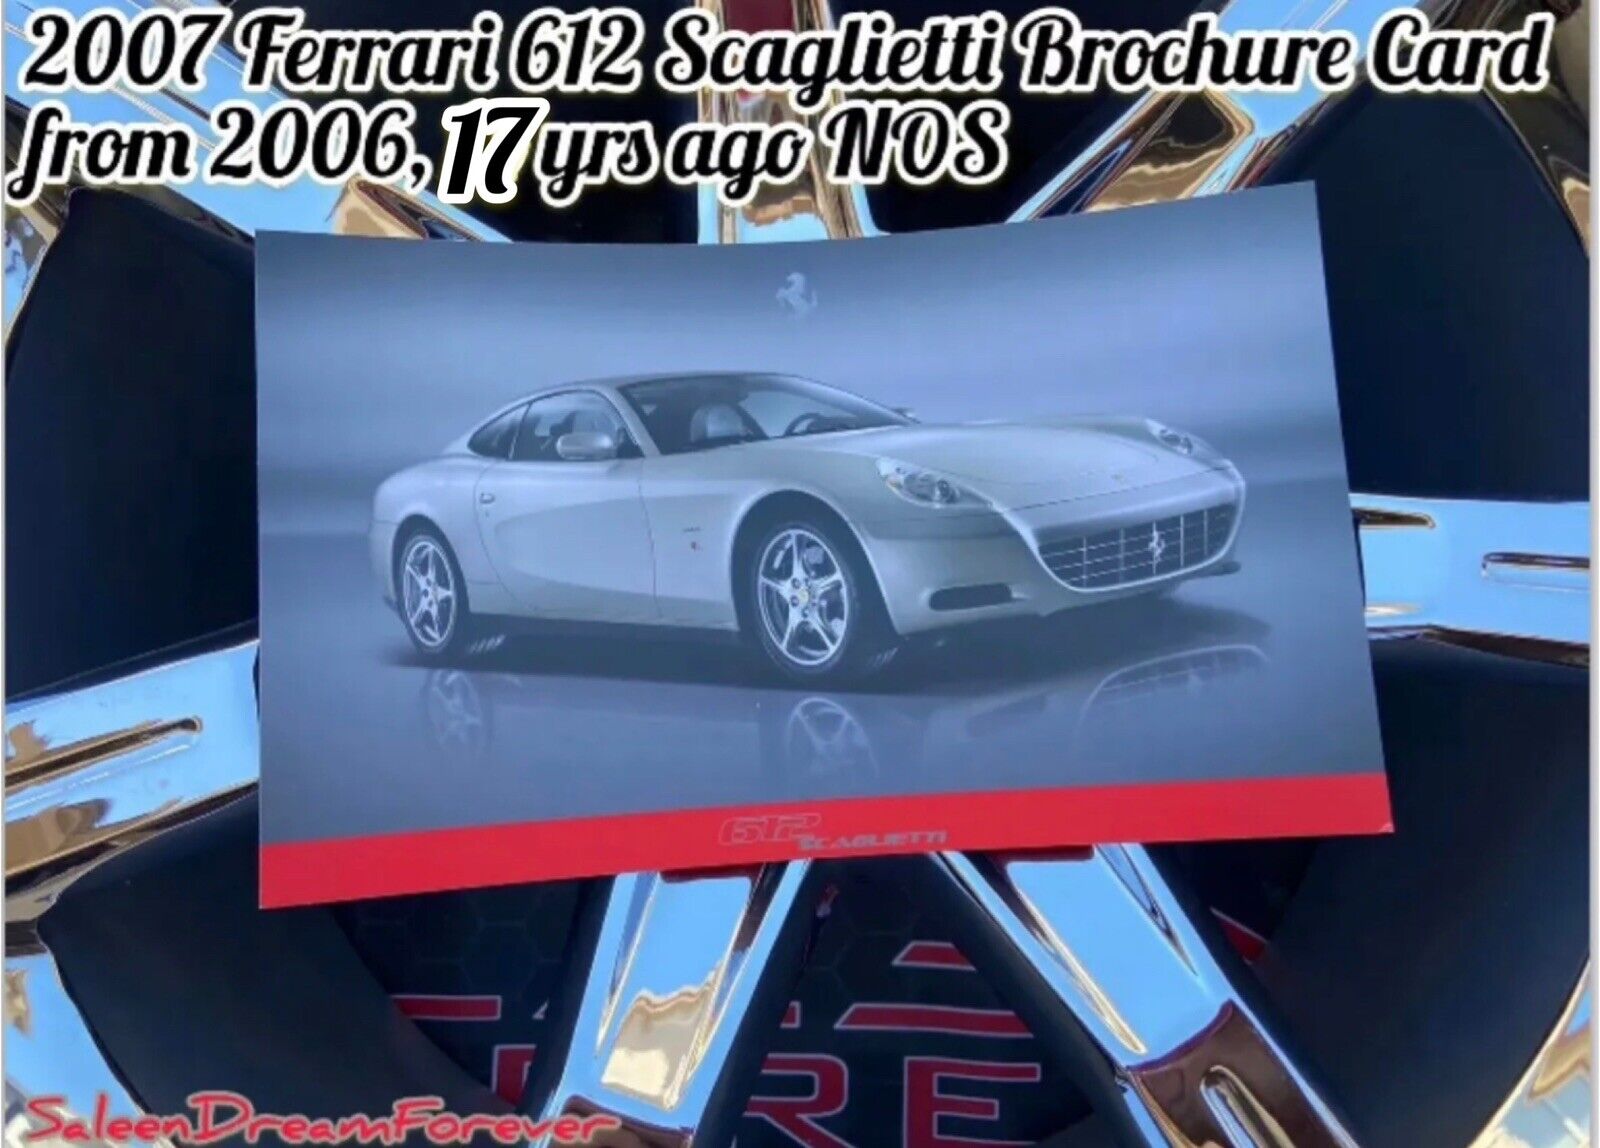 2007 FERRARI 612 SCAGLIETTI AUTOMOTIVE BROCHURE SPEC CARD NOS V12 434 TQ ITALY 